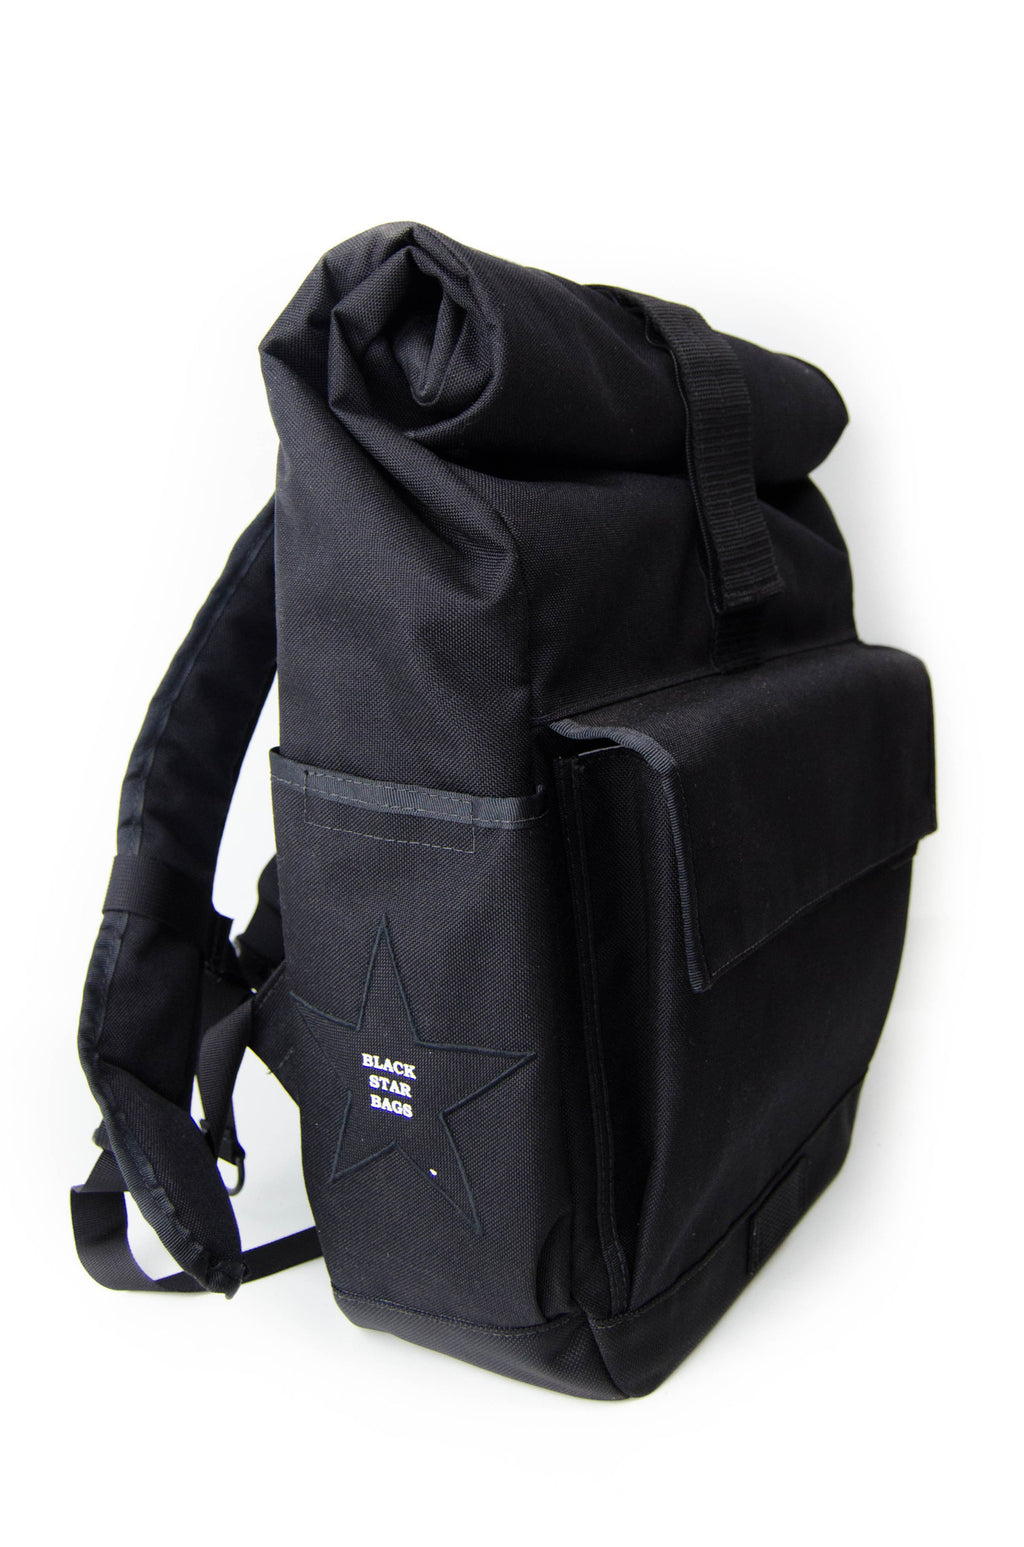 Roll-Top Backpack . Black Forest – hardgraft